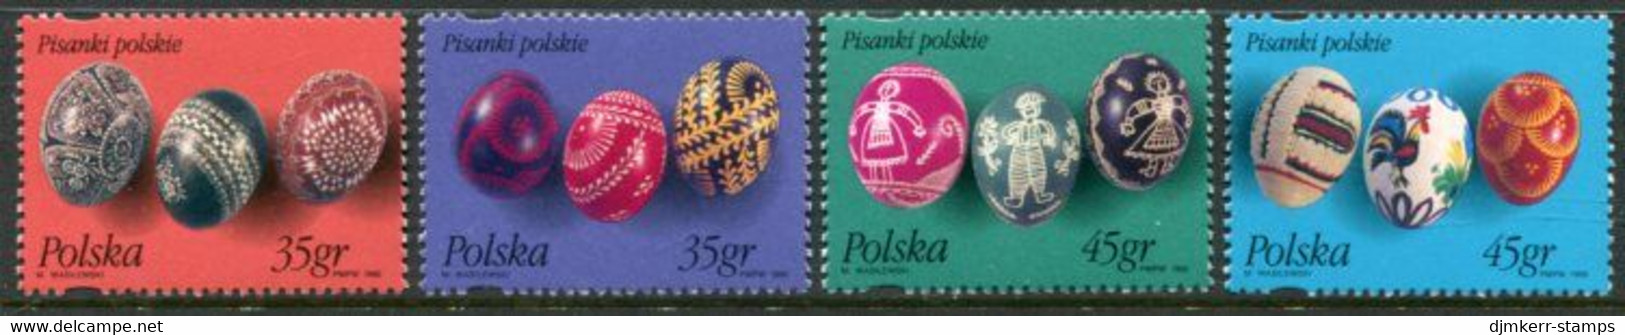 POLAND 1995 Decorated Easter Eggs MNH / **.  Michel 3526-29 - Ongebruikt